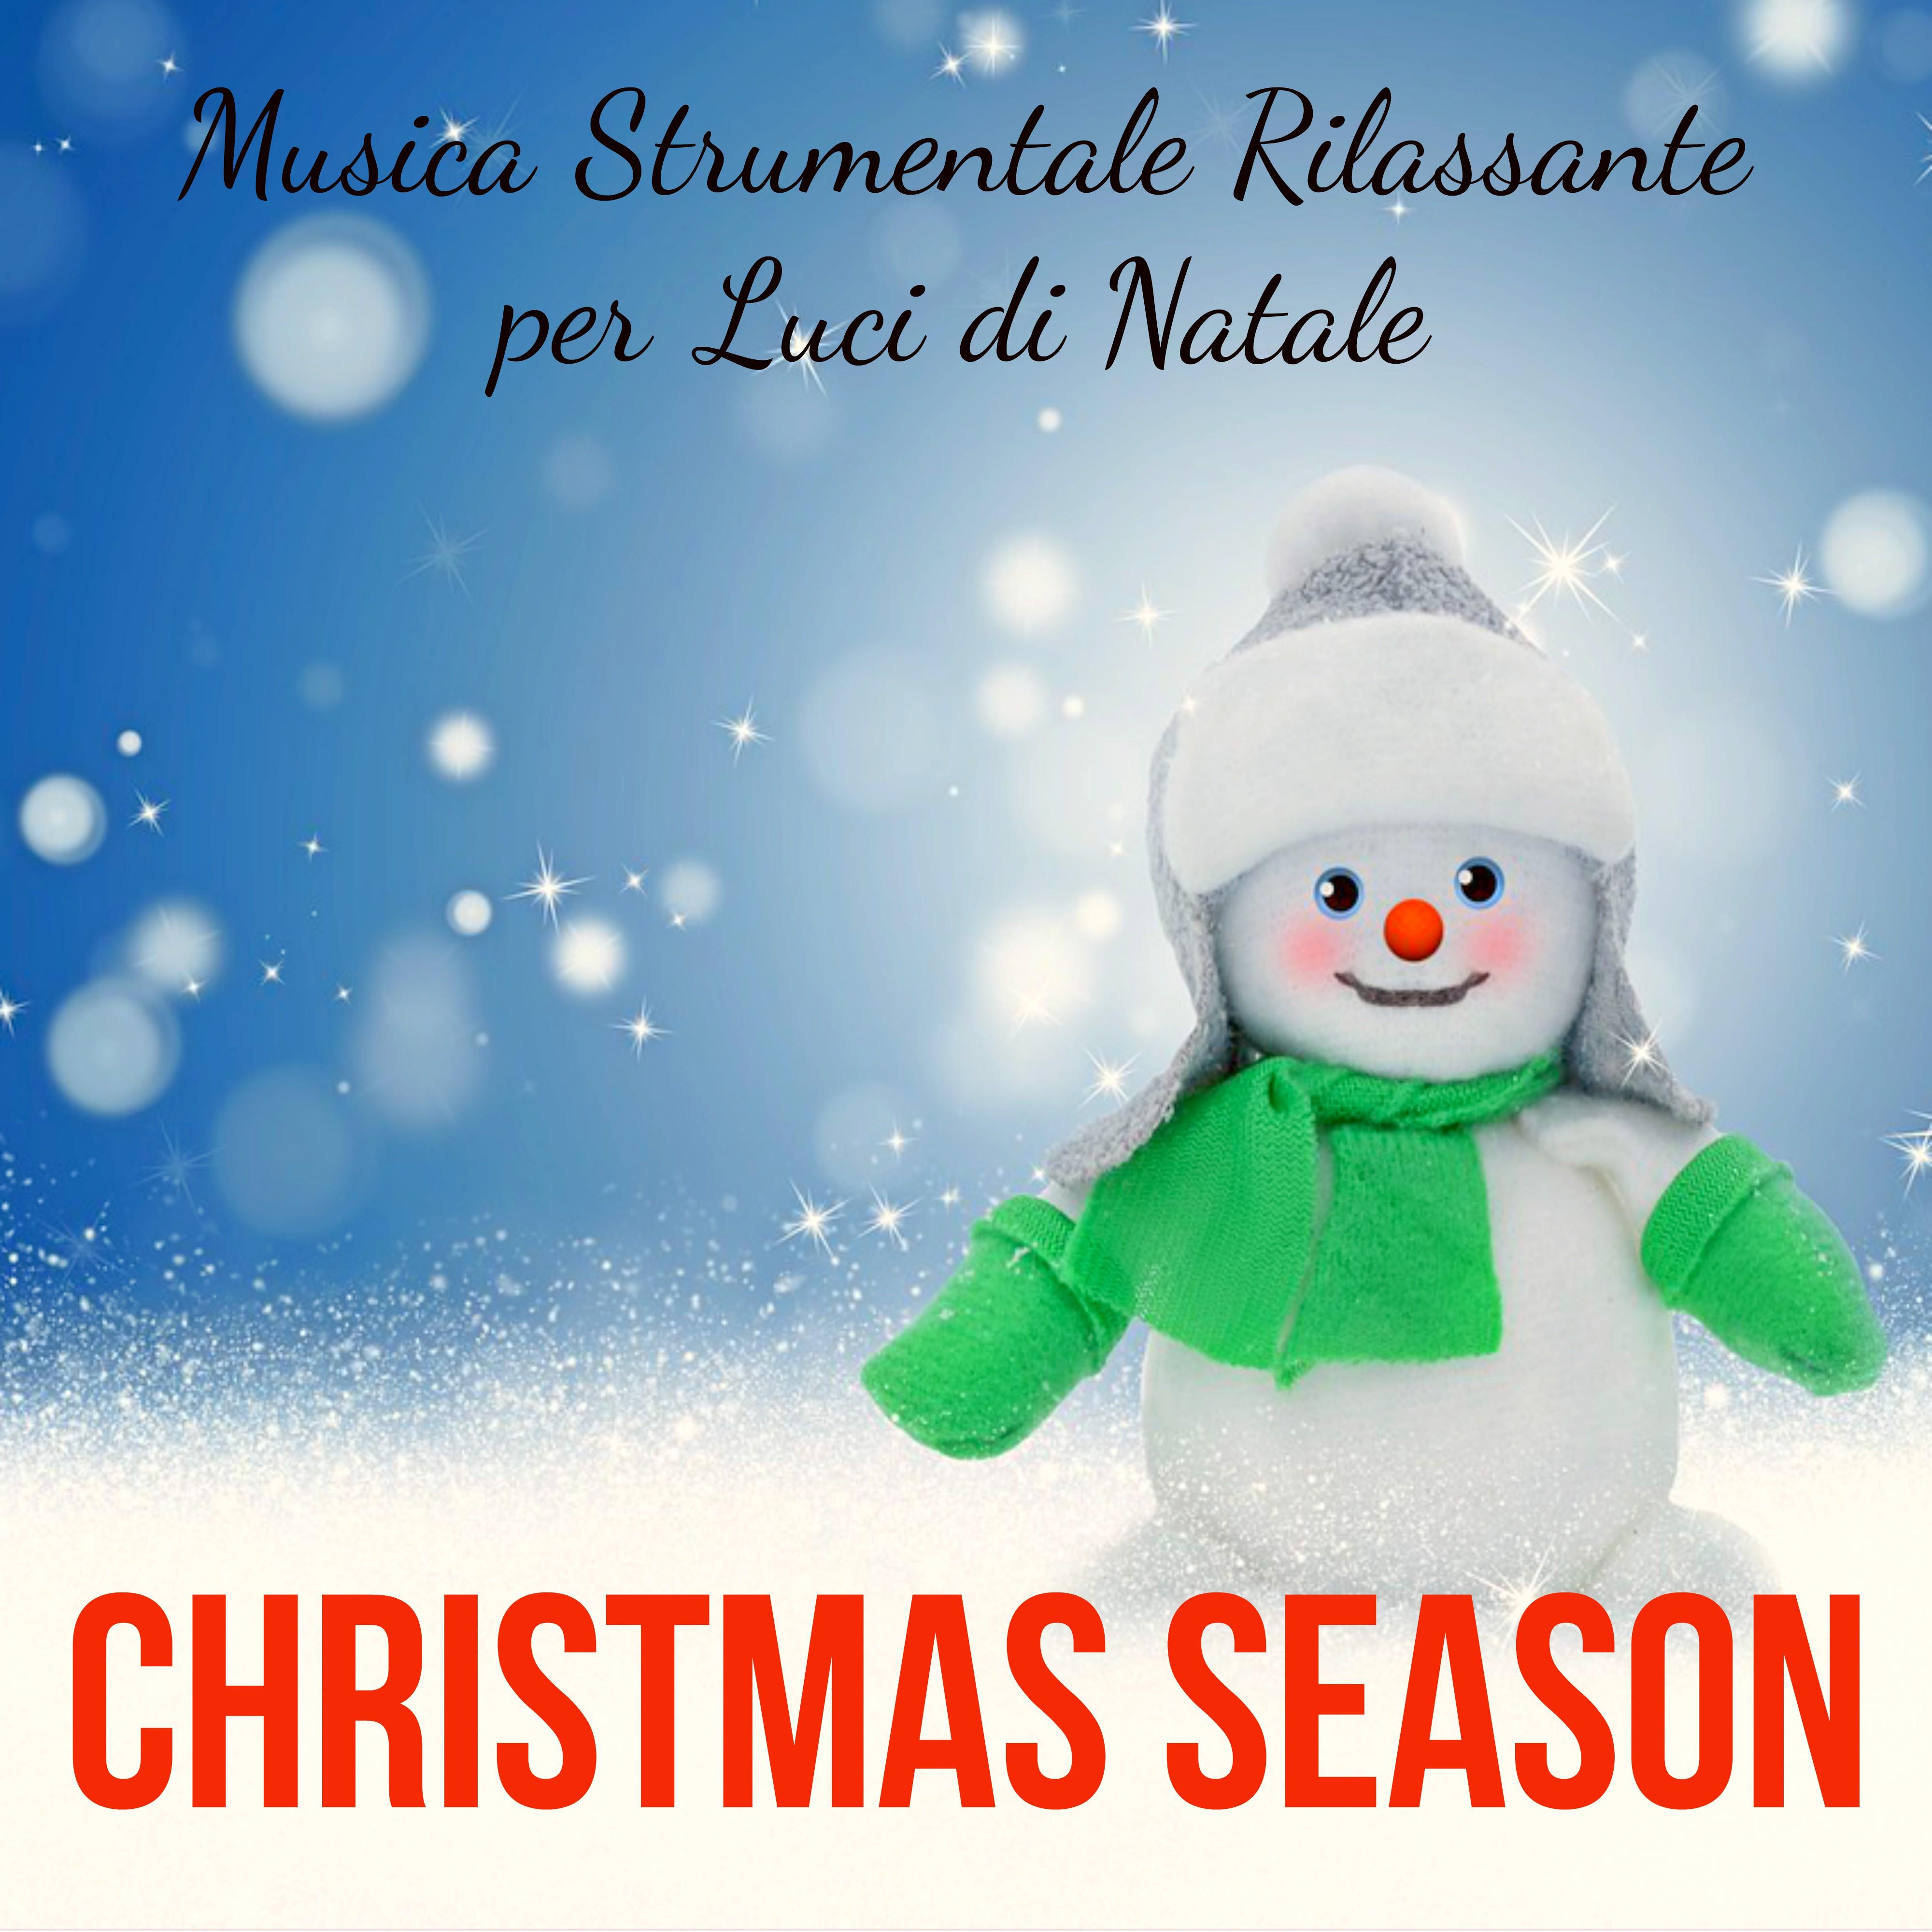 Christmas Season - Musica Strumentale Rilassante per Luci di Natale Emozione Dolci Vacanze in Famiglia con Suoni Benessere Soft New Age